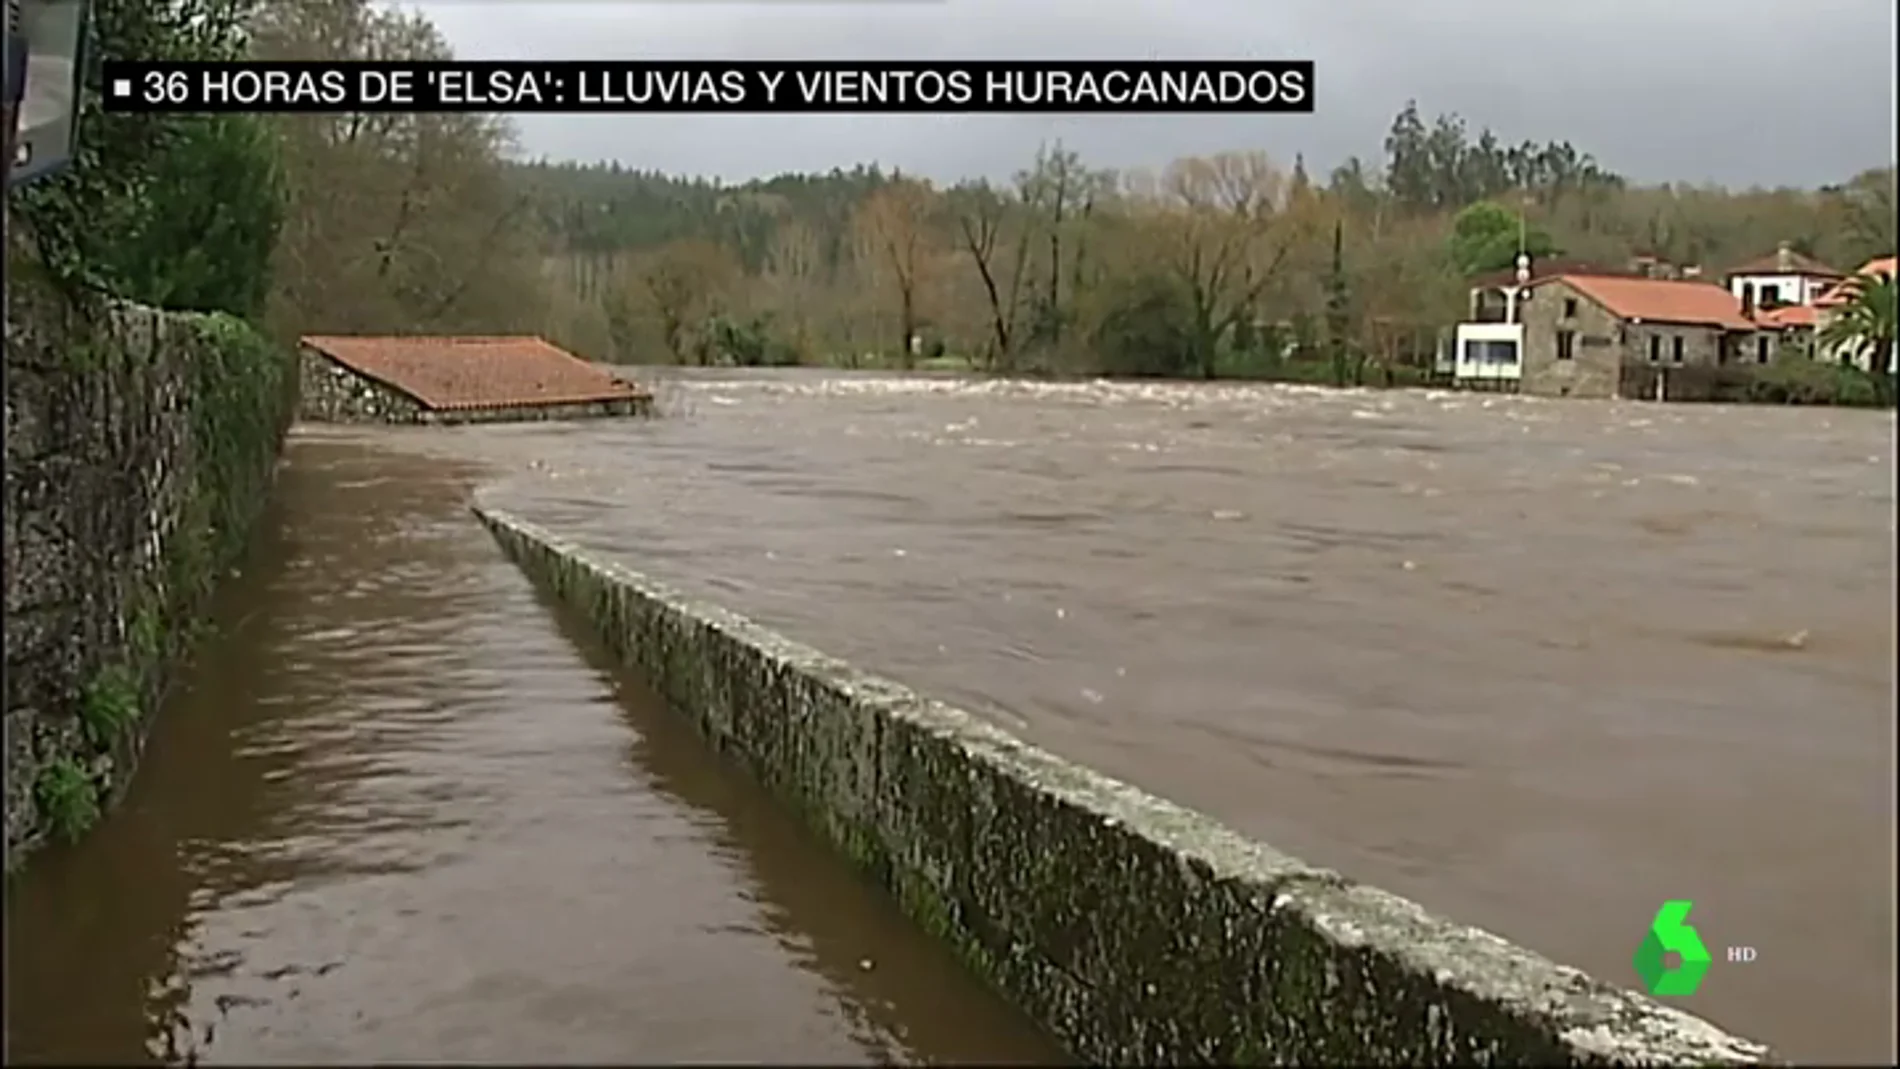 La borrasca Elsa deja vientos huracanados en Galicia y ríos desbordados